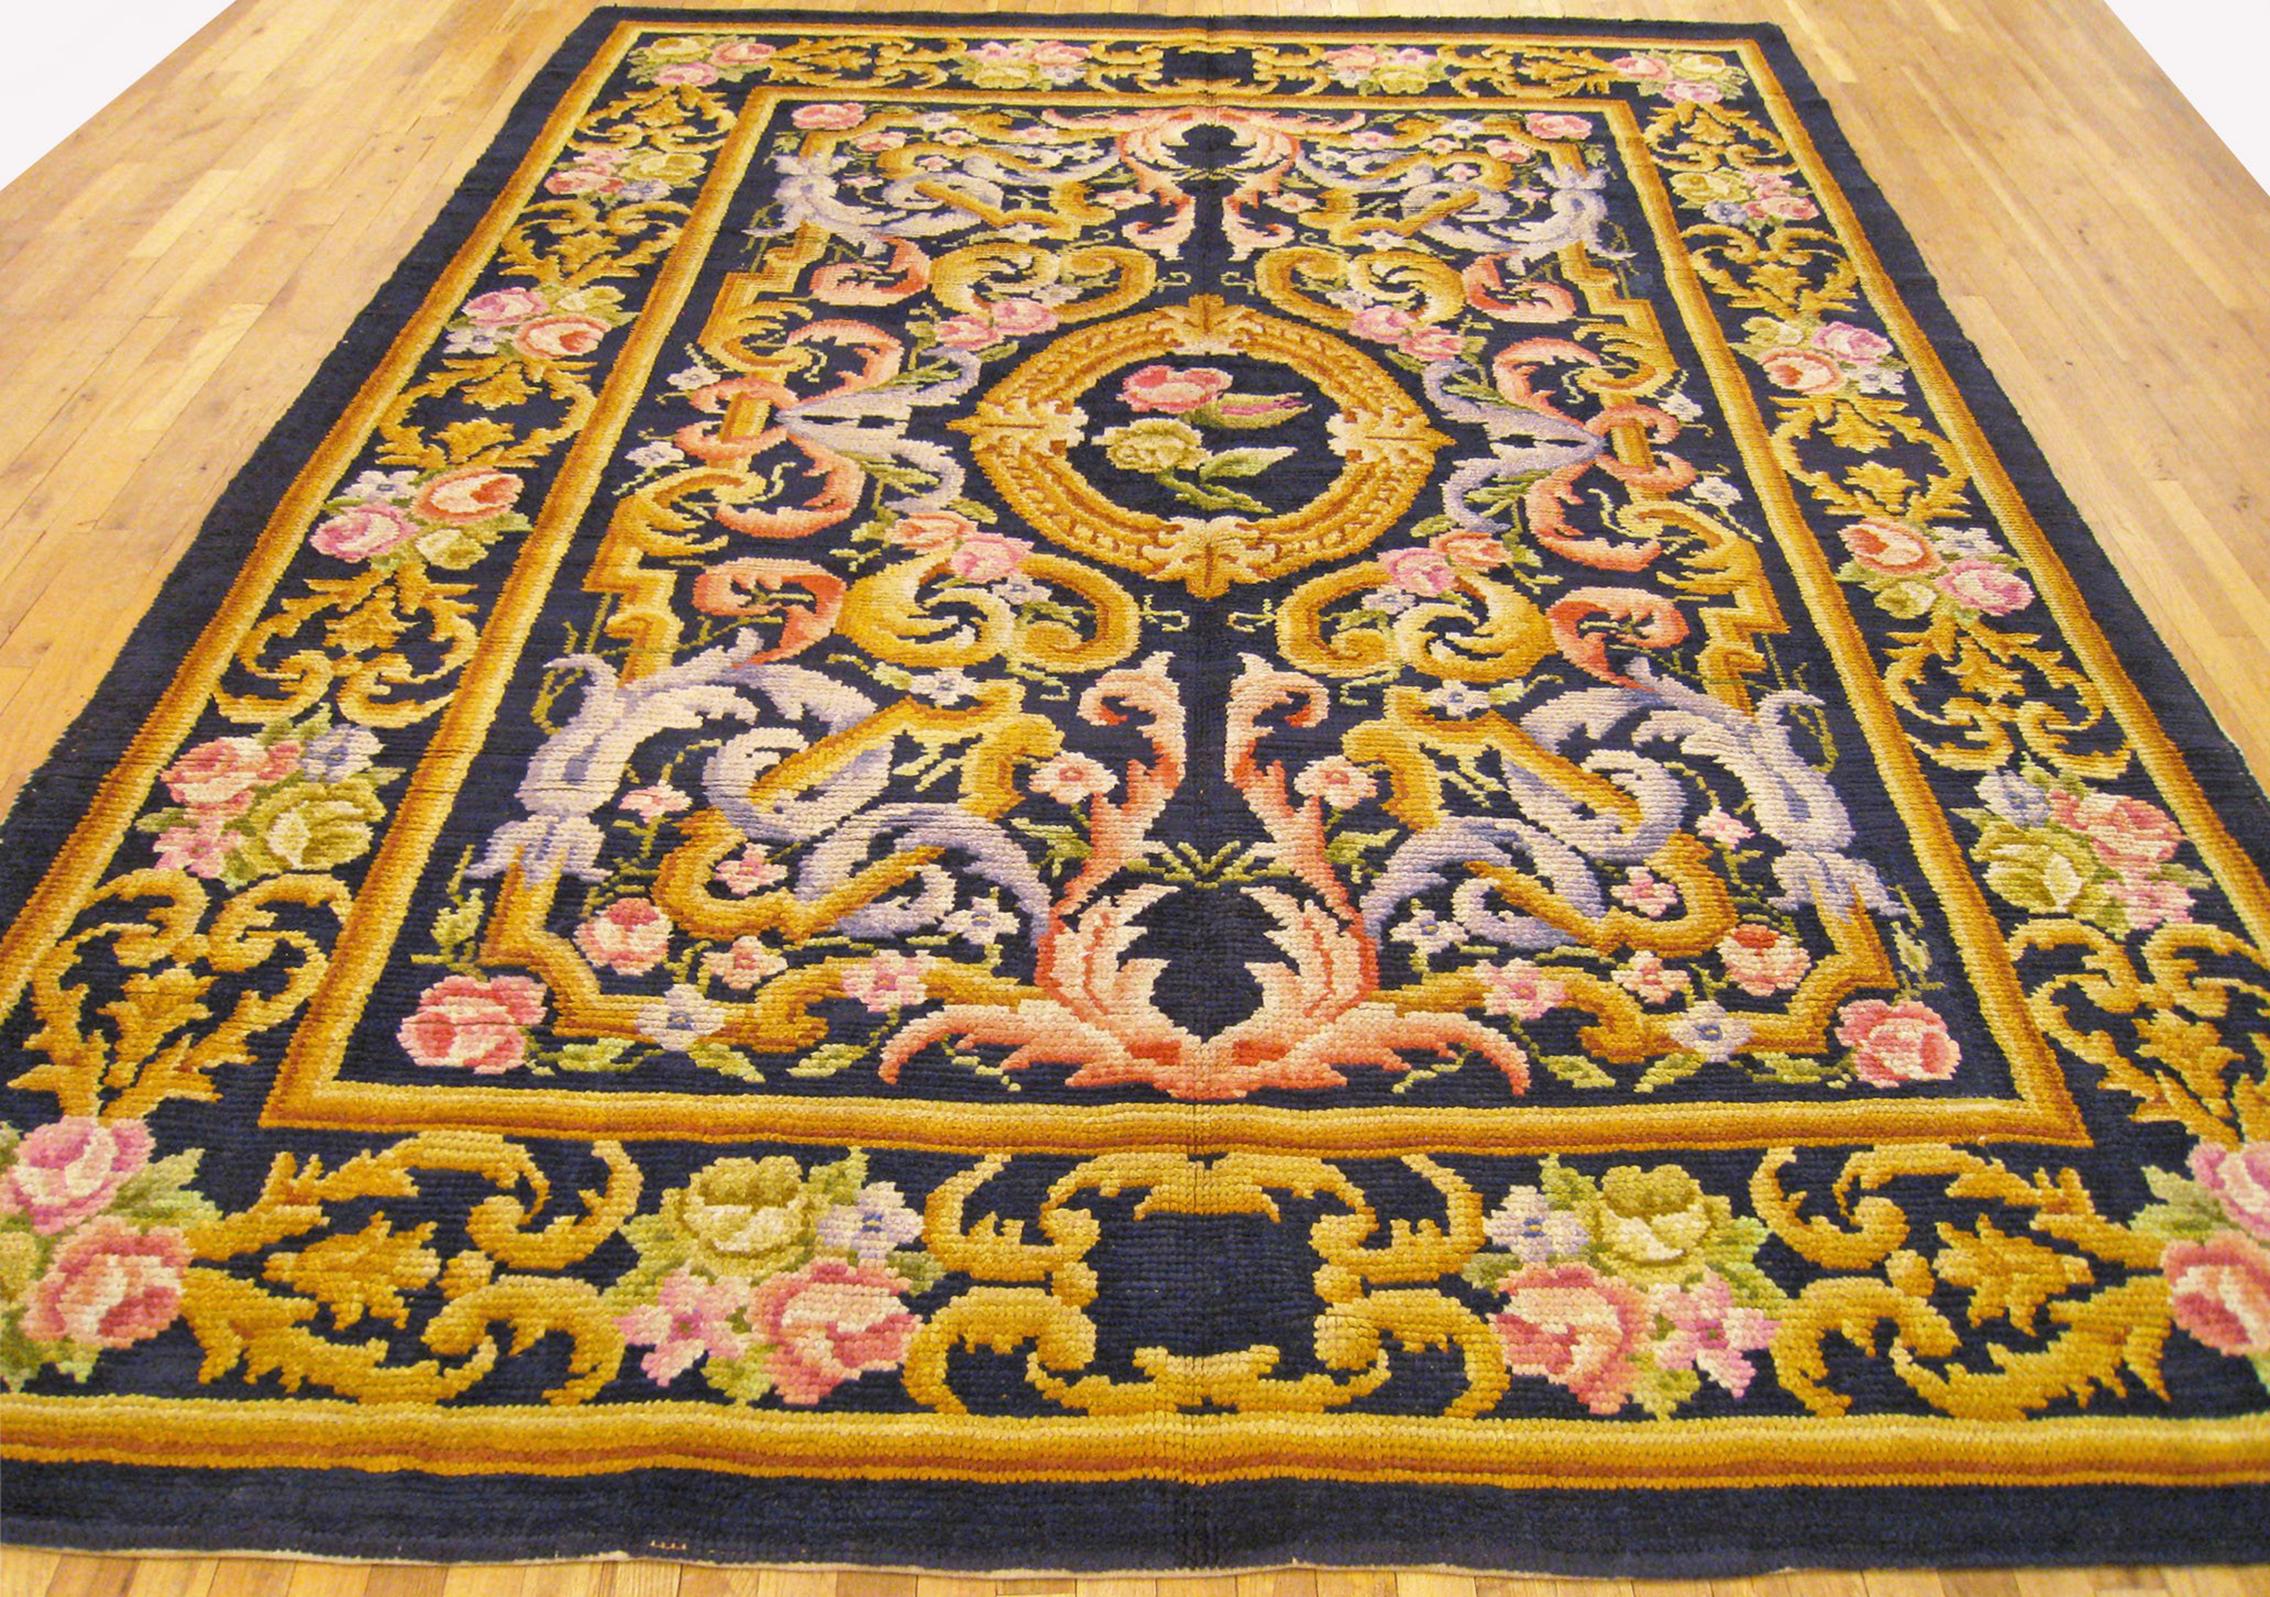 Spanischer Vintage Savonnerie-Teppich, Zimmergröße, um 1930

Ein einzigartiger spanischer Savonnerie-Orientalteppich, handgeknüpft mit weichem Wollflor. Dieser schöne handgeknüpfte Wollteppich zeigt ein zentrales Medaillon auf einem dunkelblauen